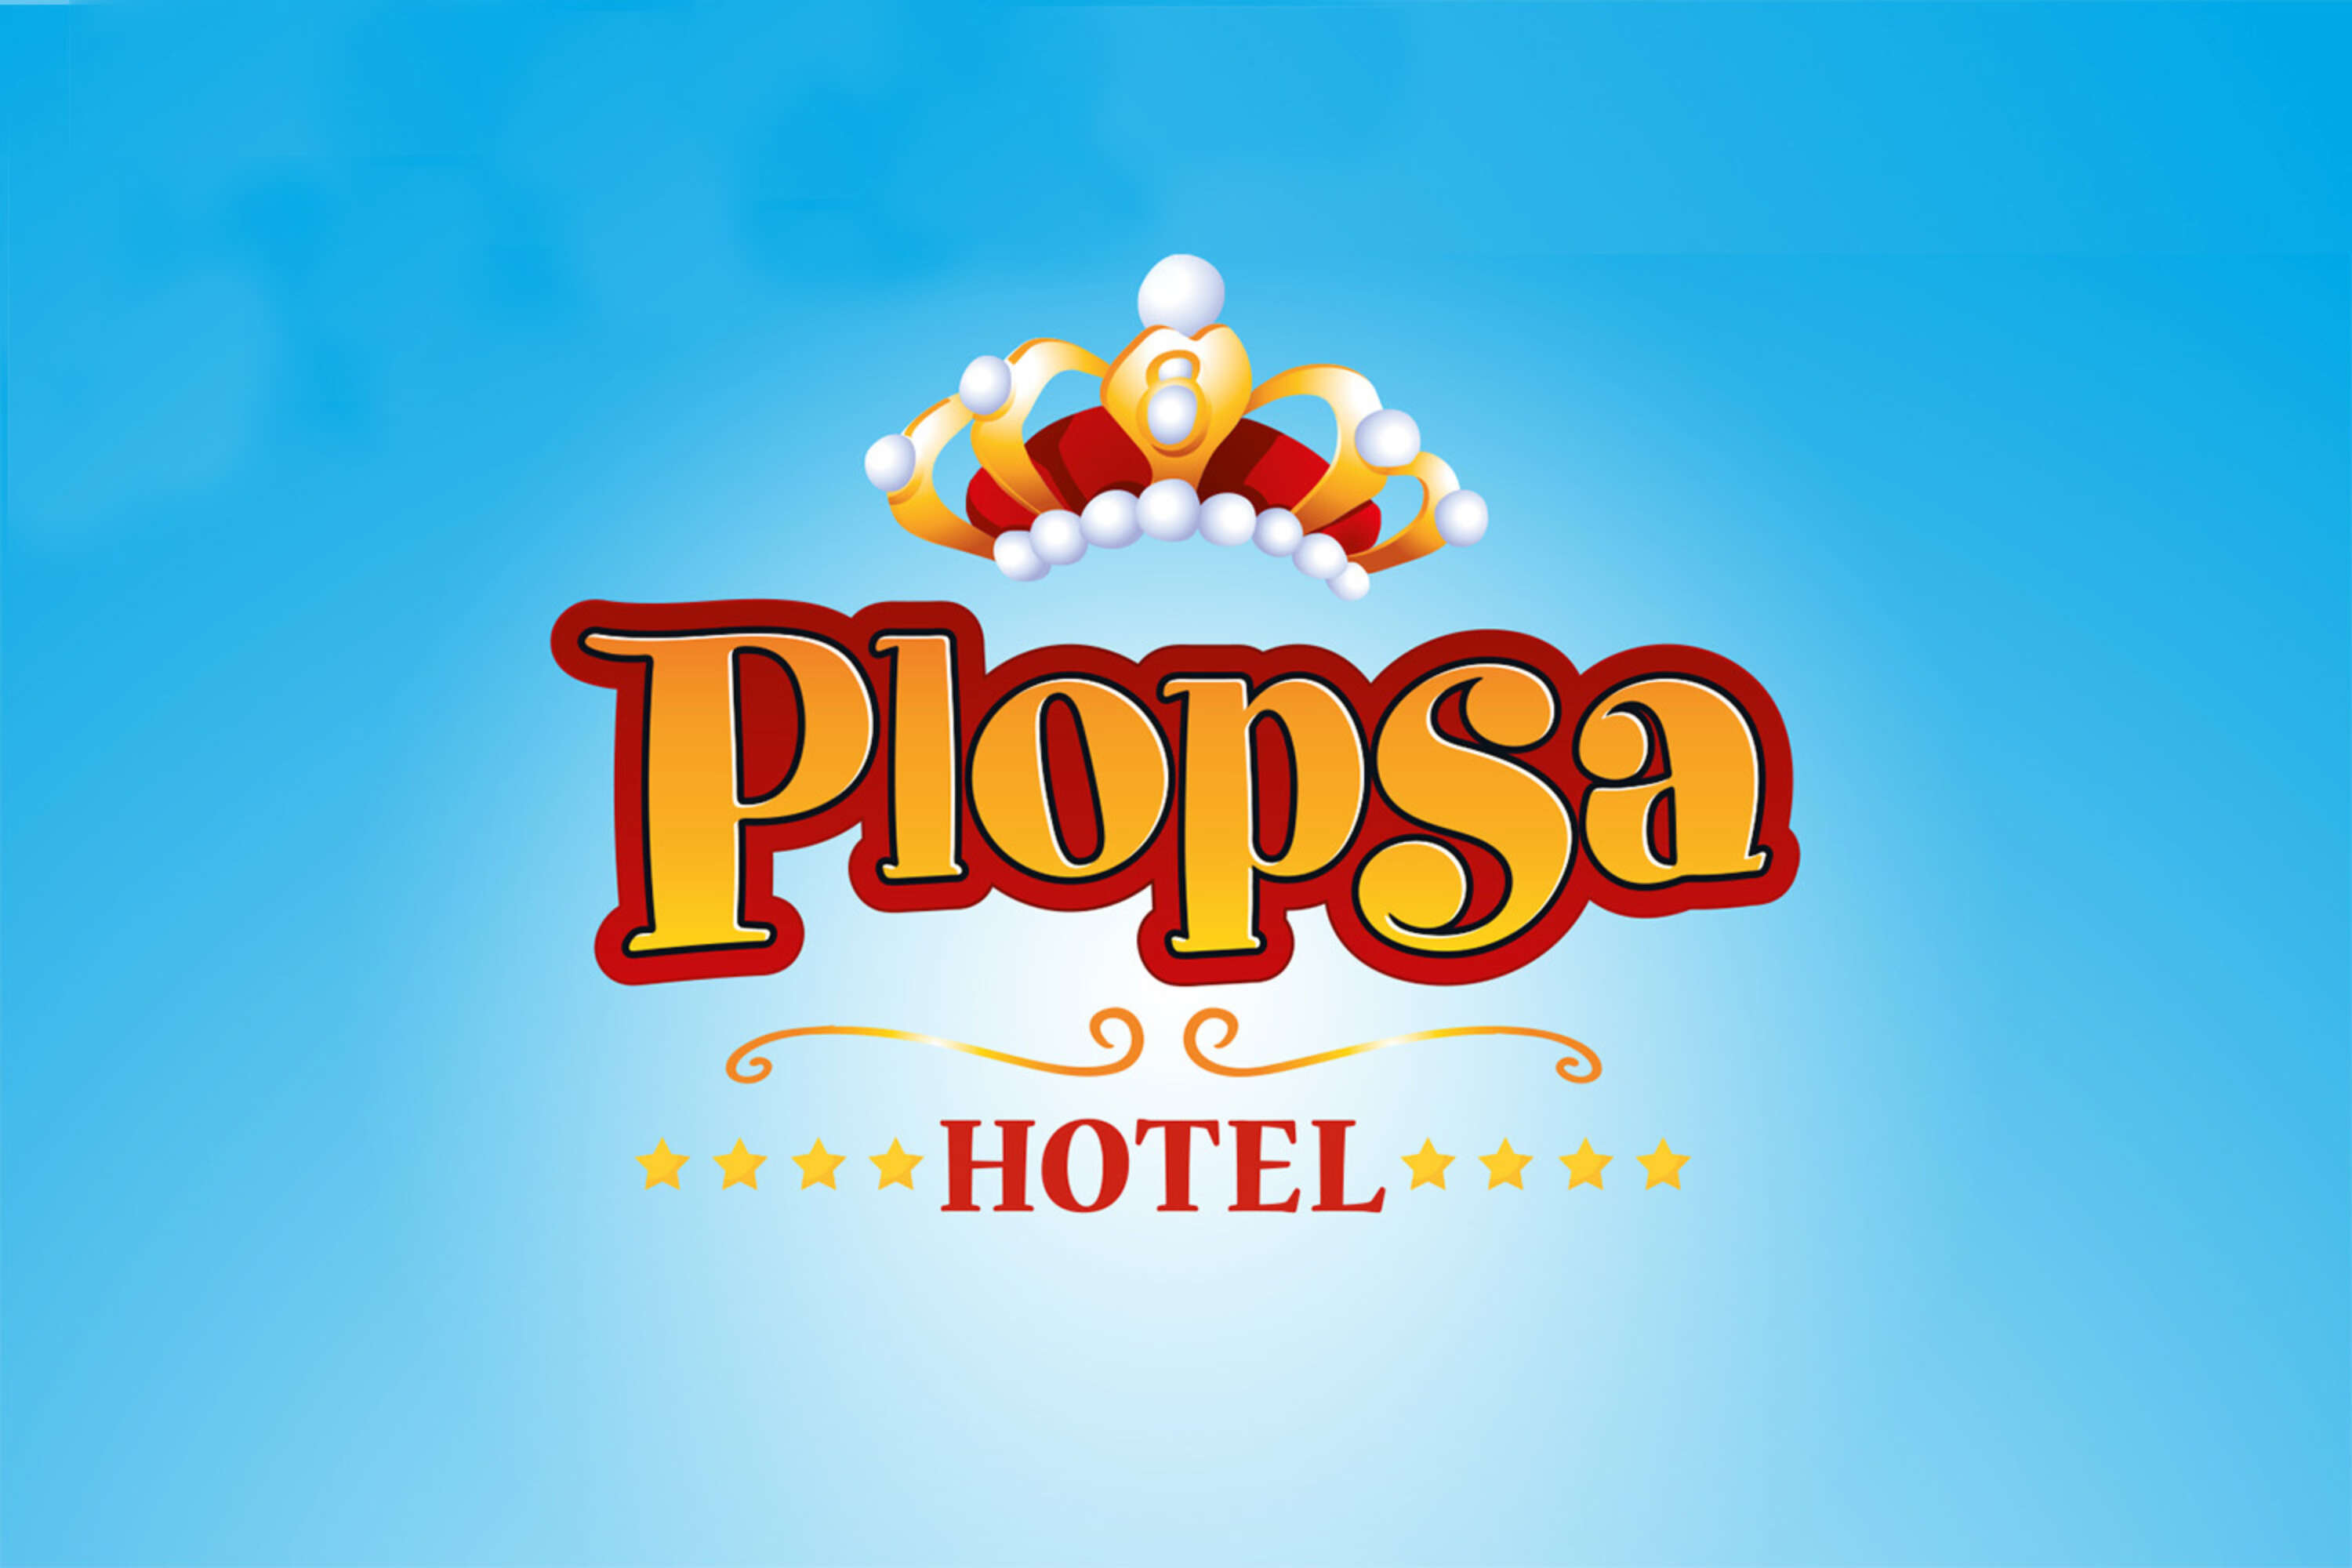 Plopsa Hotel 1500